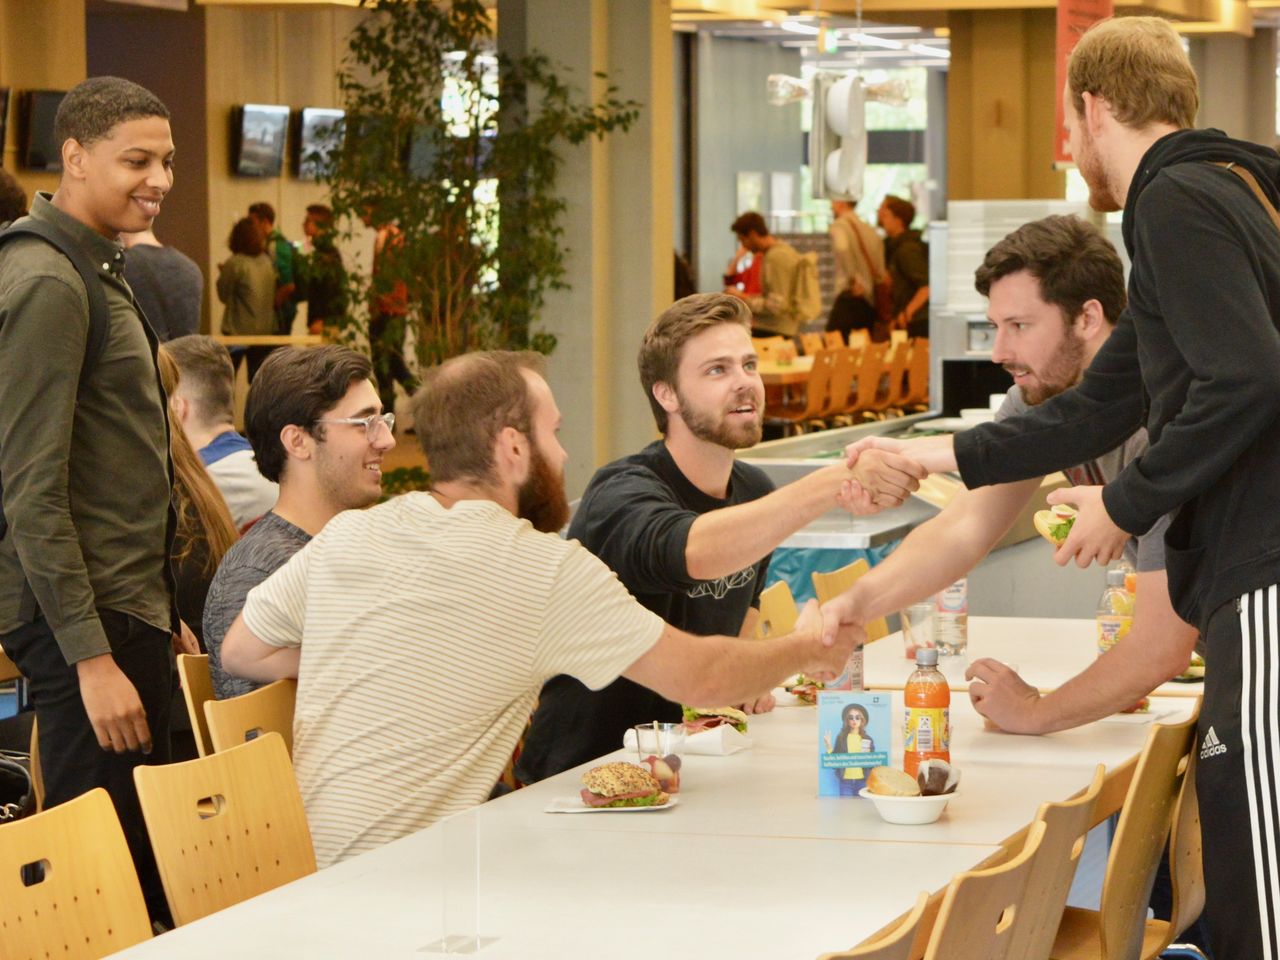 Sechs Studenten sitzen in der Mensa an einem Tisch. Sie verabschieden sich mit einem Handschlag.